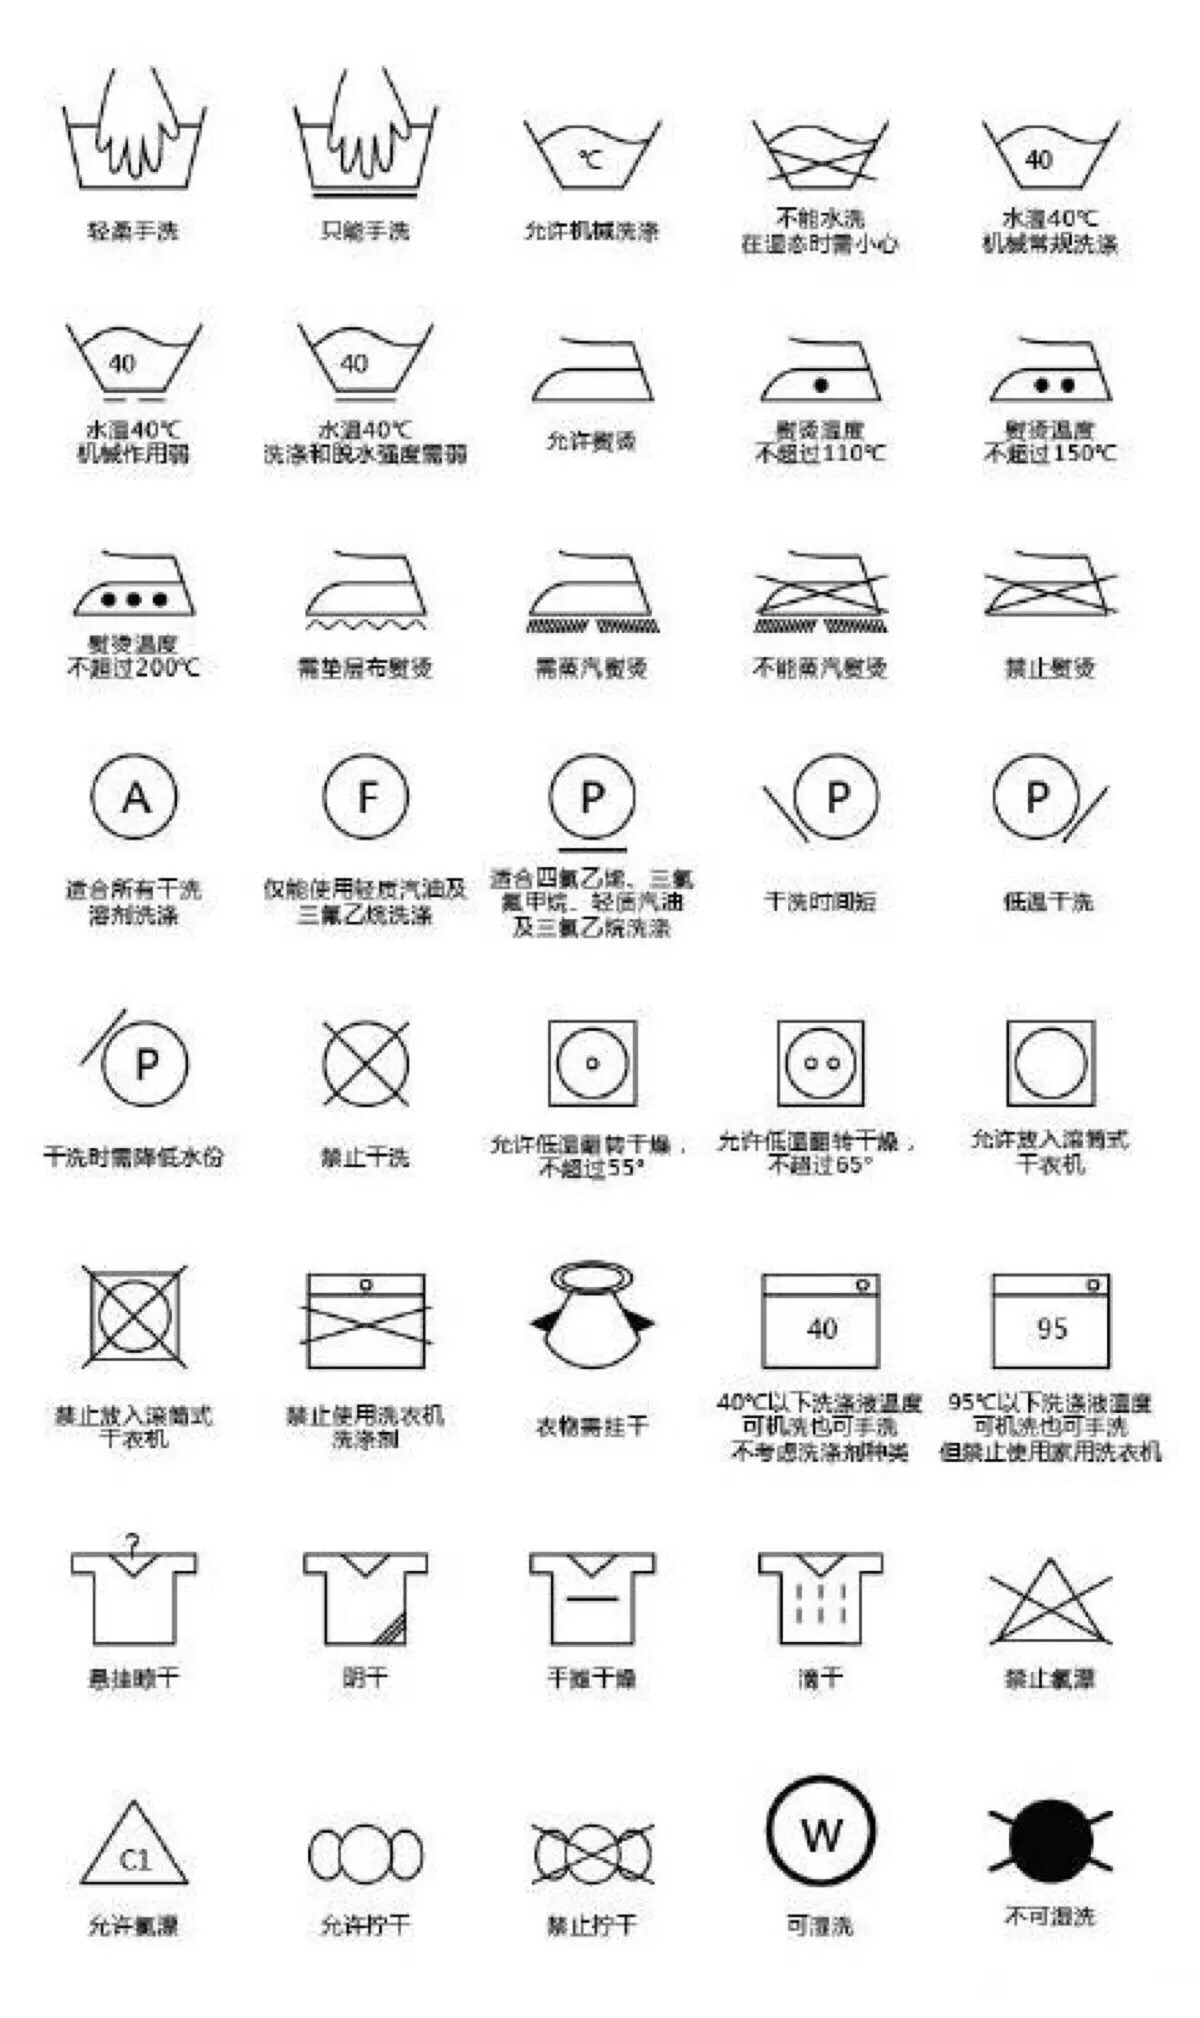 【衣物洗涤标志说明】对于没有中文翻译标签的,看懂了